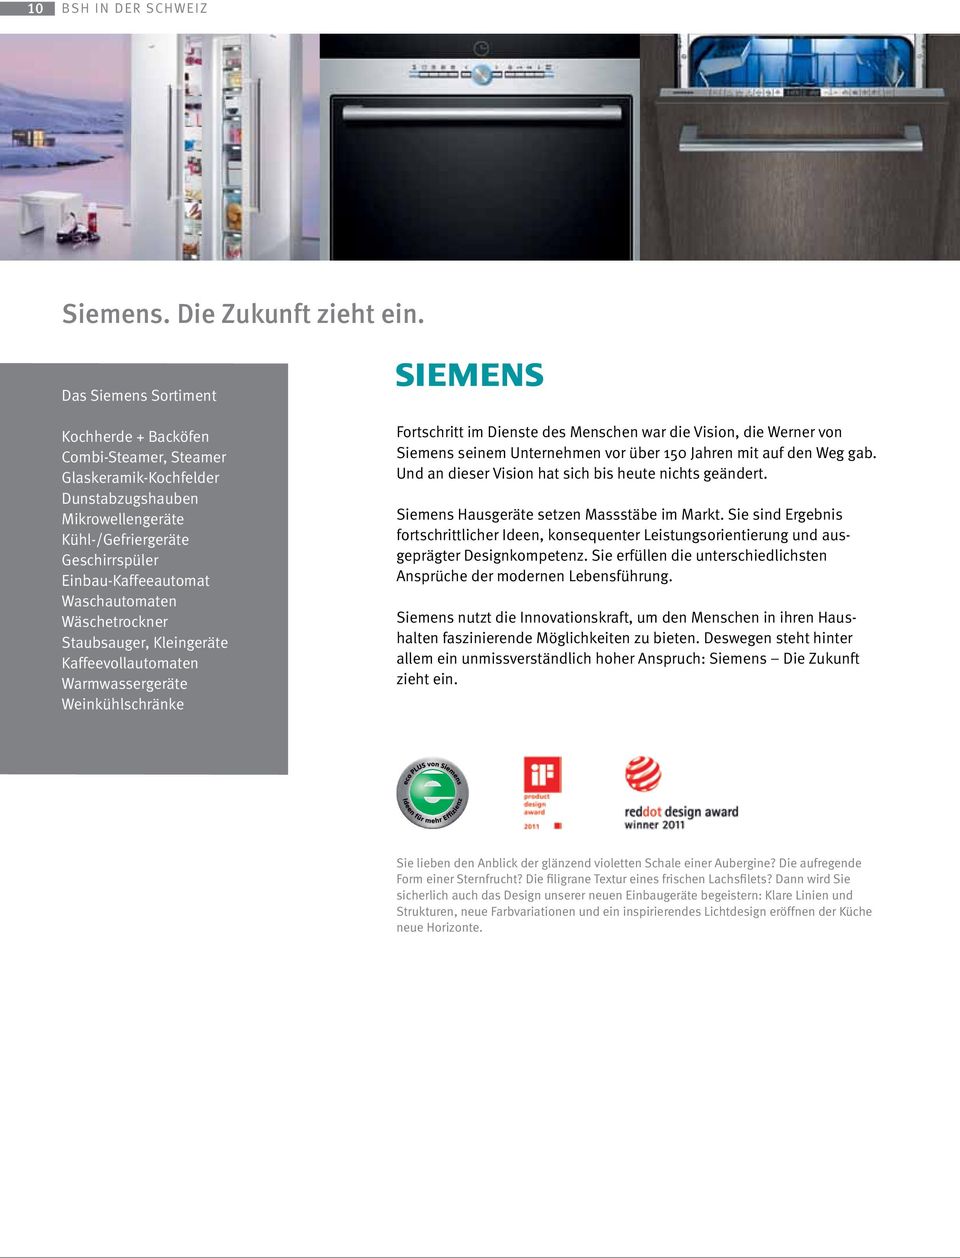 Wäschetrockner Staubsauger, Kleingeräte Kaffeevollautomaten Warmwassergeräte Weinkühlschränke Fortschritt im Dienste des Menschen war die Vision, die Werner von Siemens seinem Unternehmen vor über